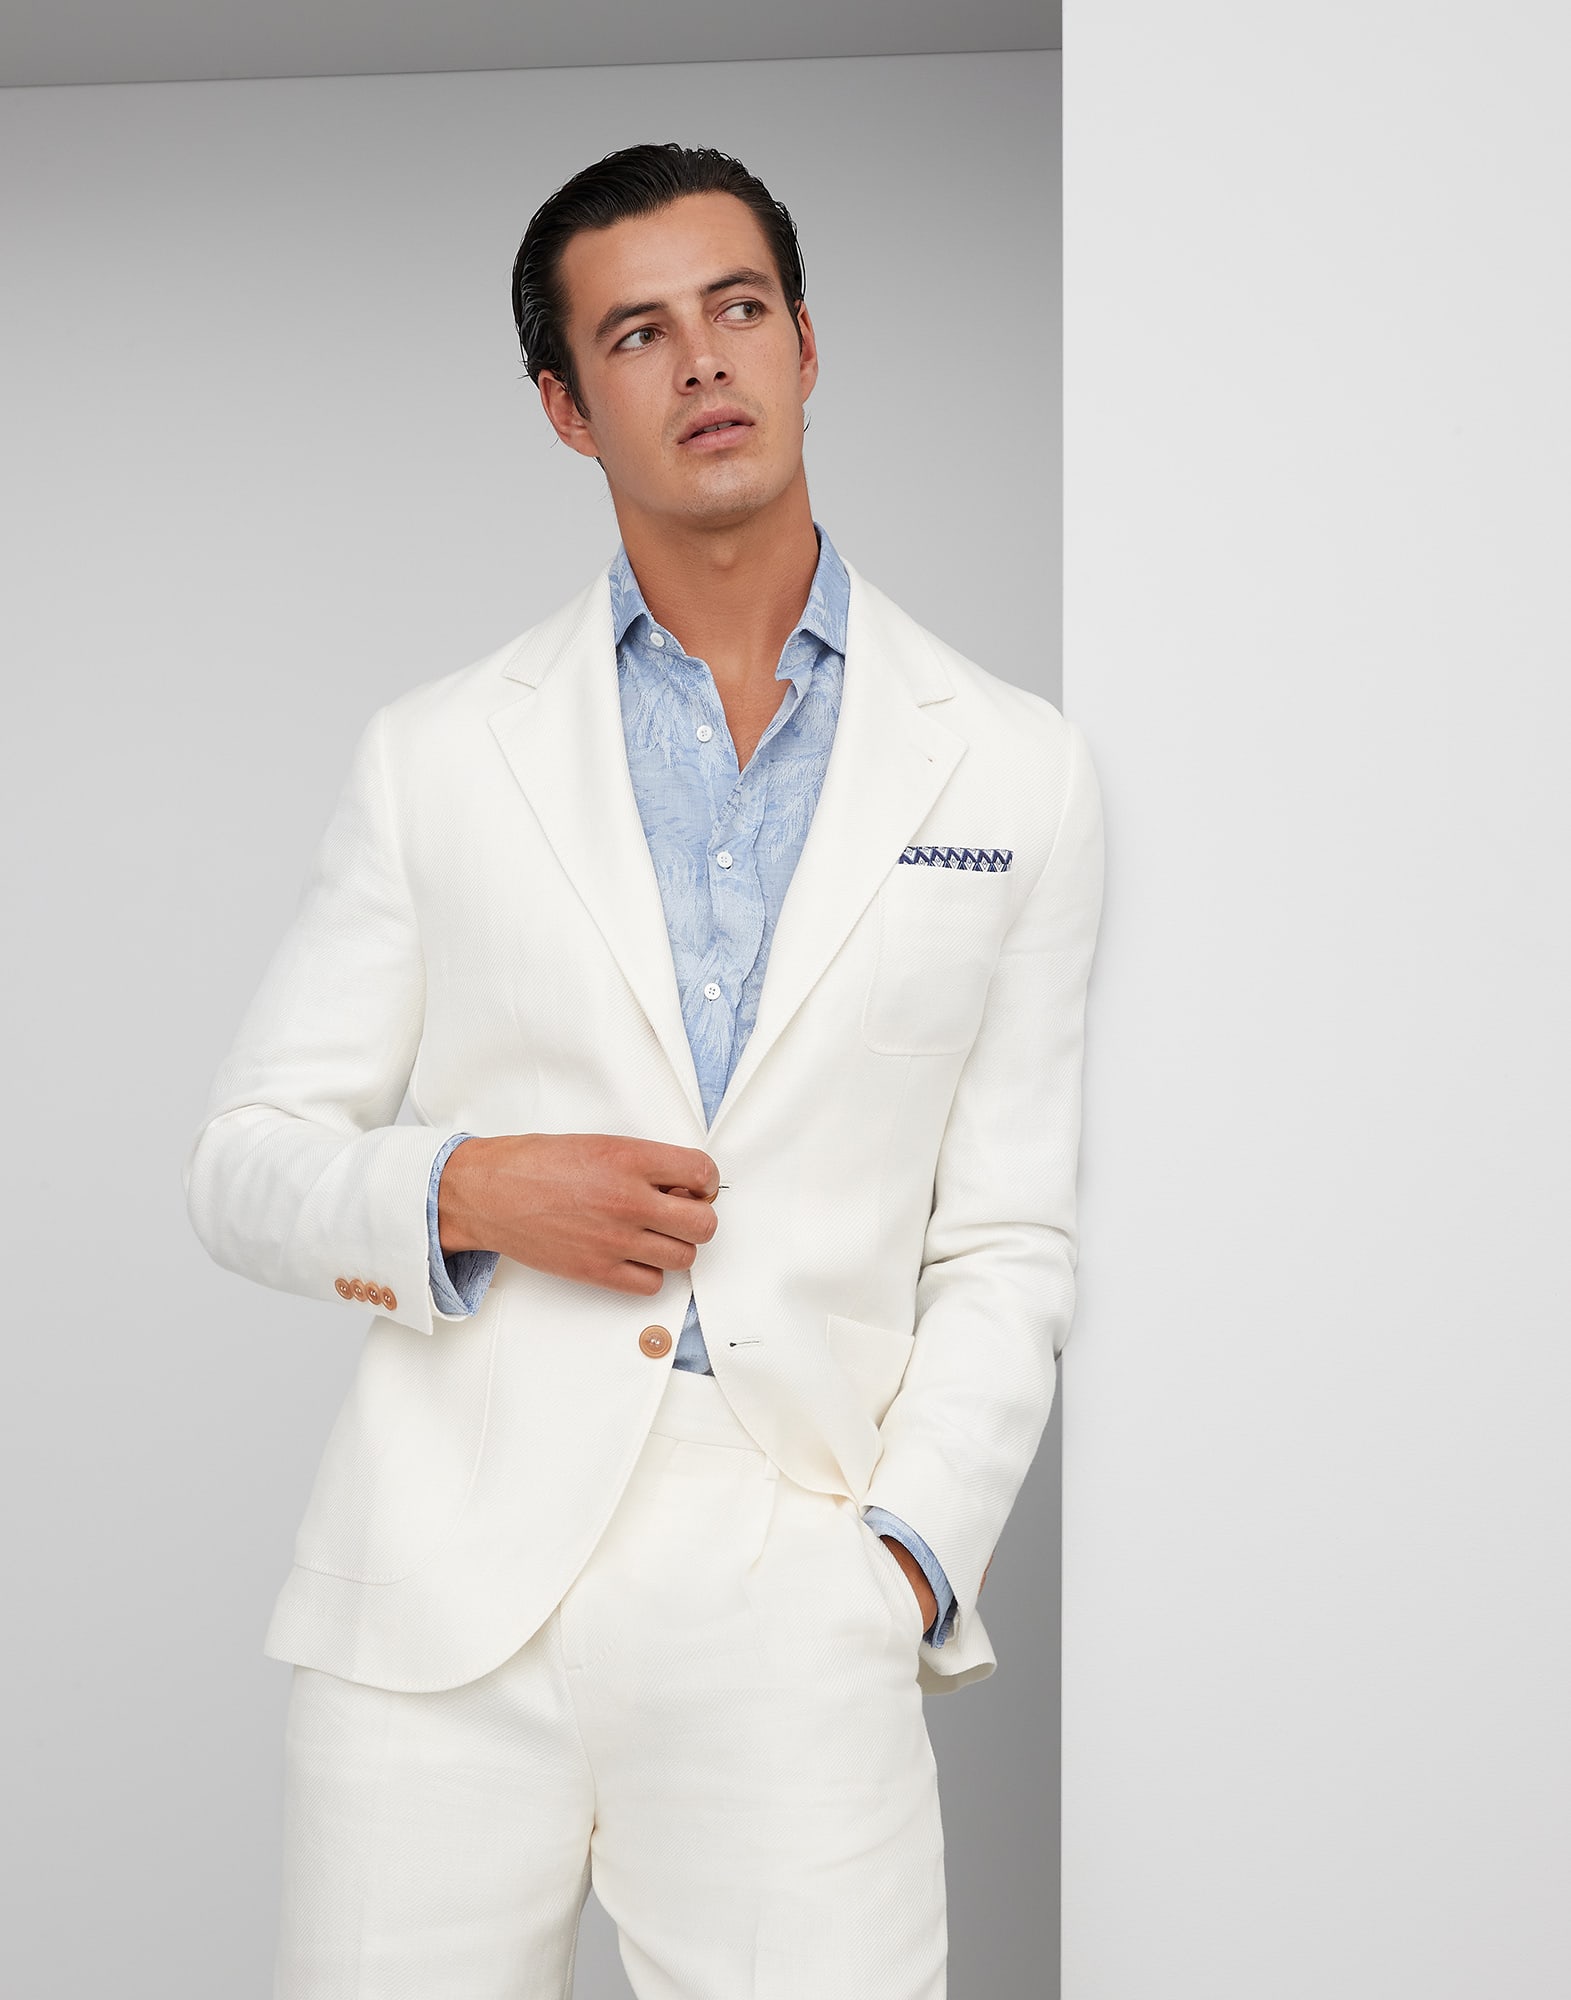 Бесподкладочный пиджак из ткани диагональ Белый с Сероватым Оттенком Мужчина - Brunello Cucinelli